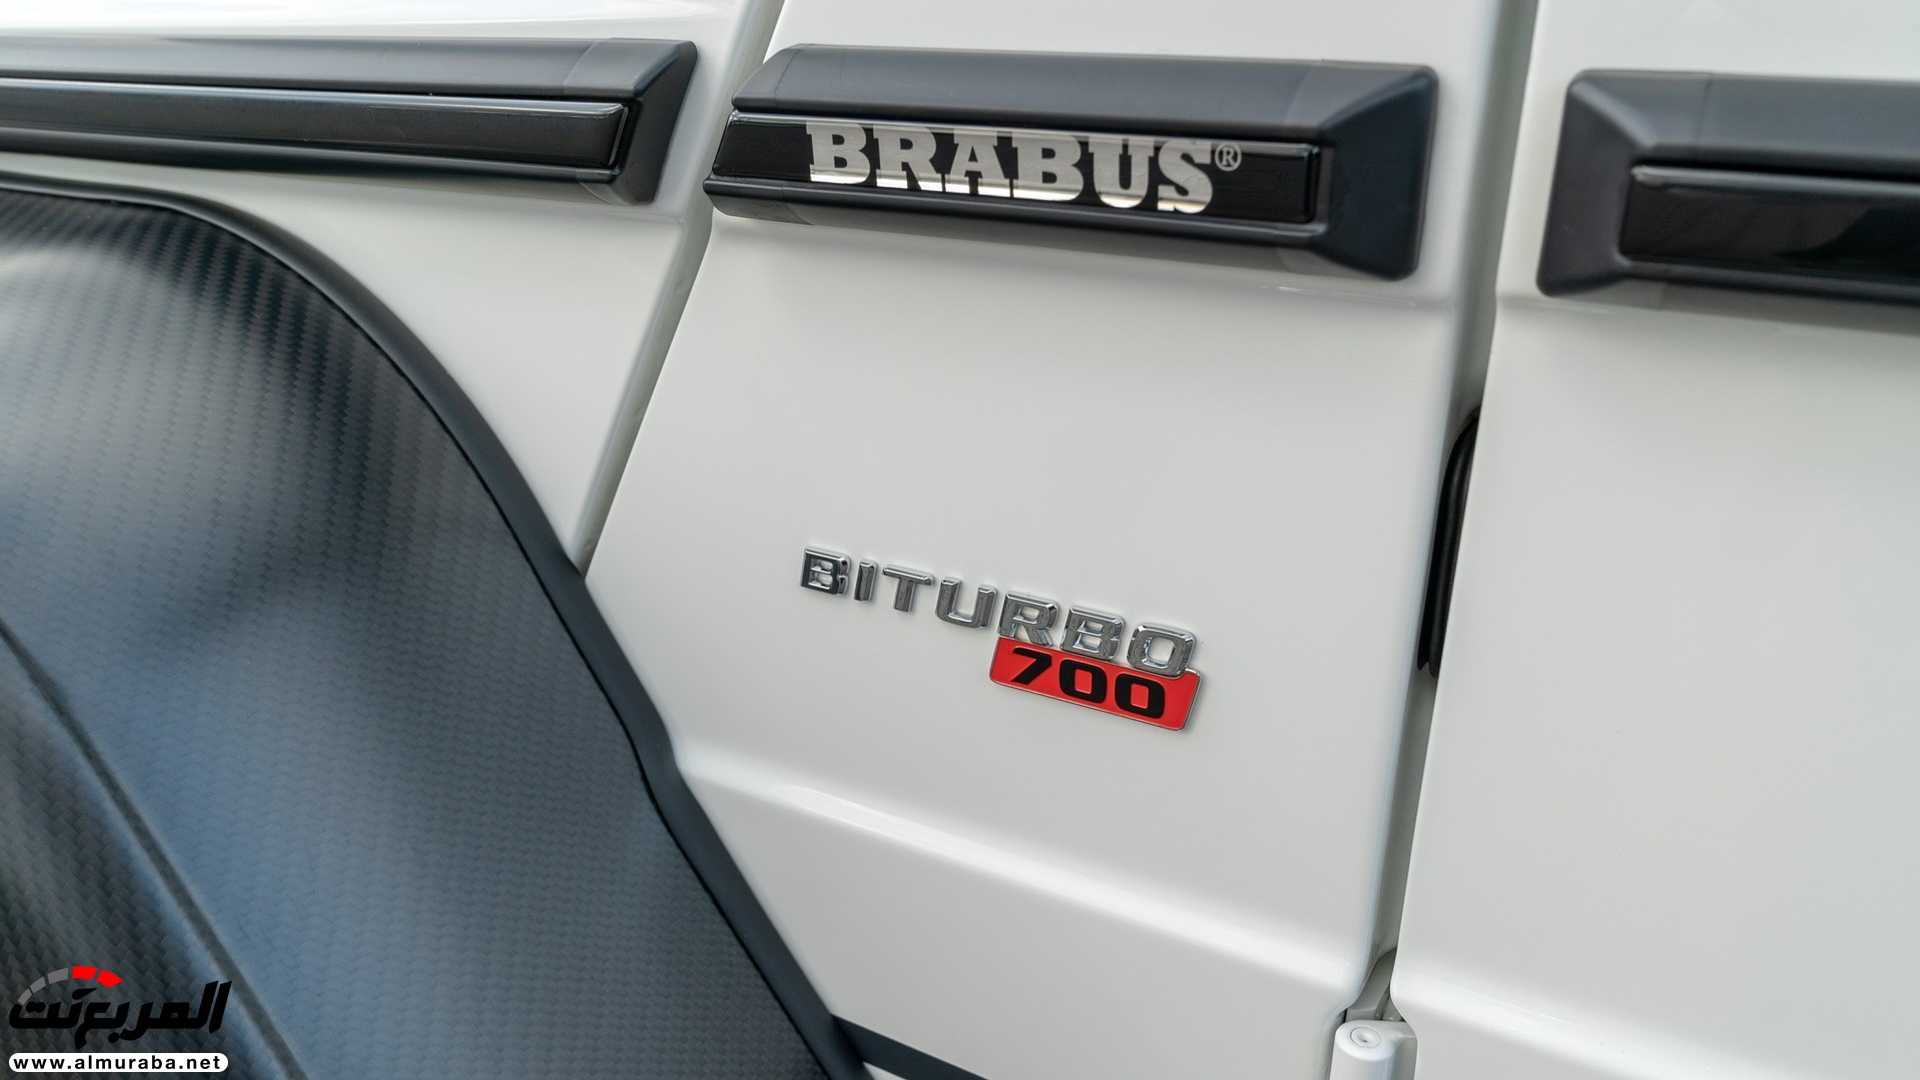 مرسيدس G63 AMG الإصدر الأخير برابوس 700 4x4² تنطلق رسمياً 41